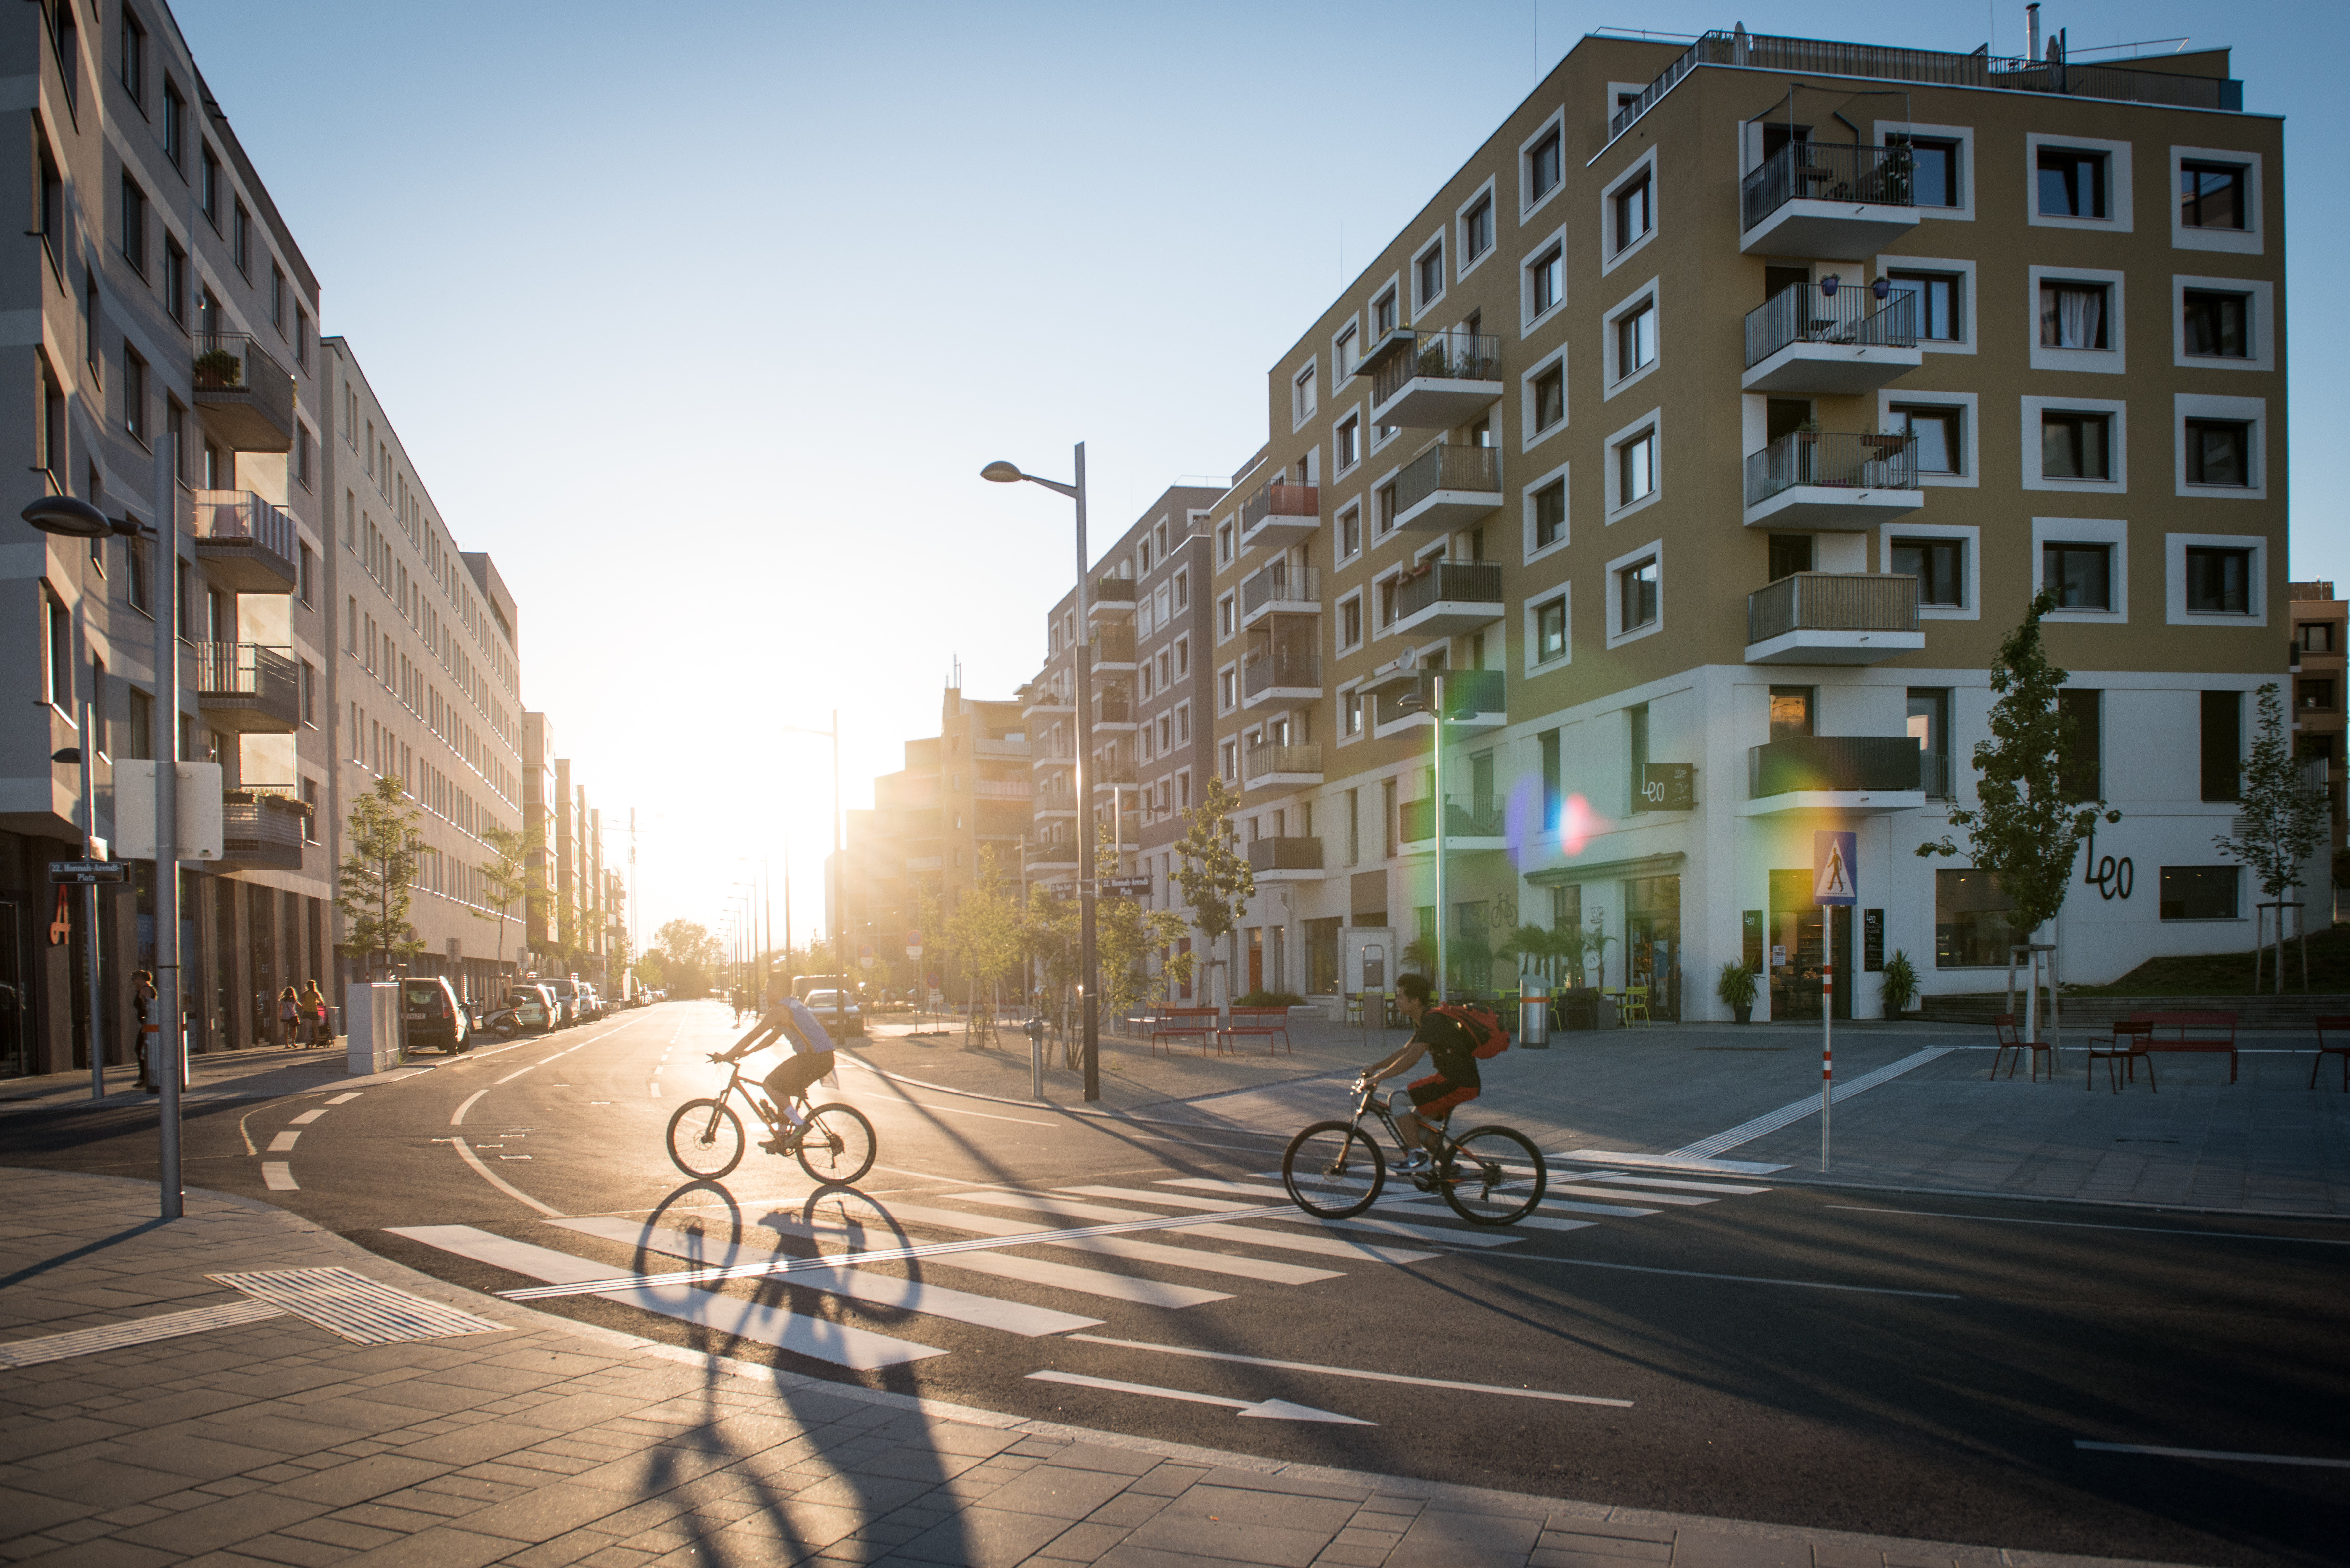 Straße und Wohnhäuser in der mit intelligentem Mobilitätskonzept ausgestatteten Seestadt Aspern in Wien 